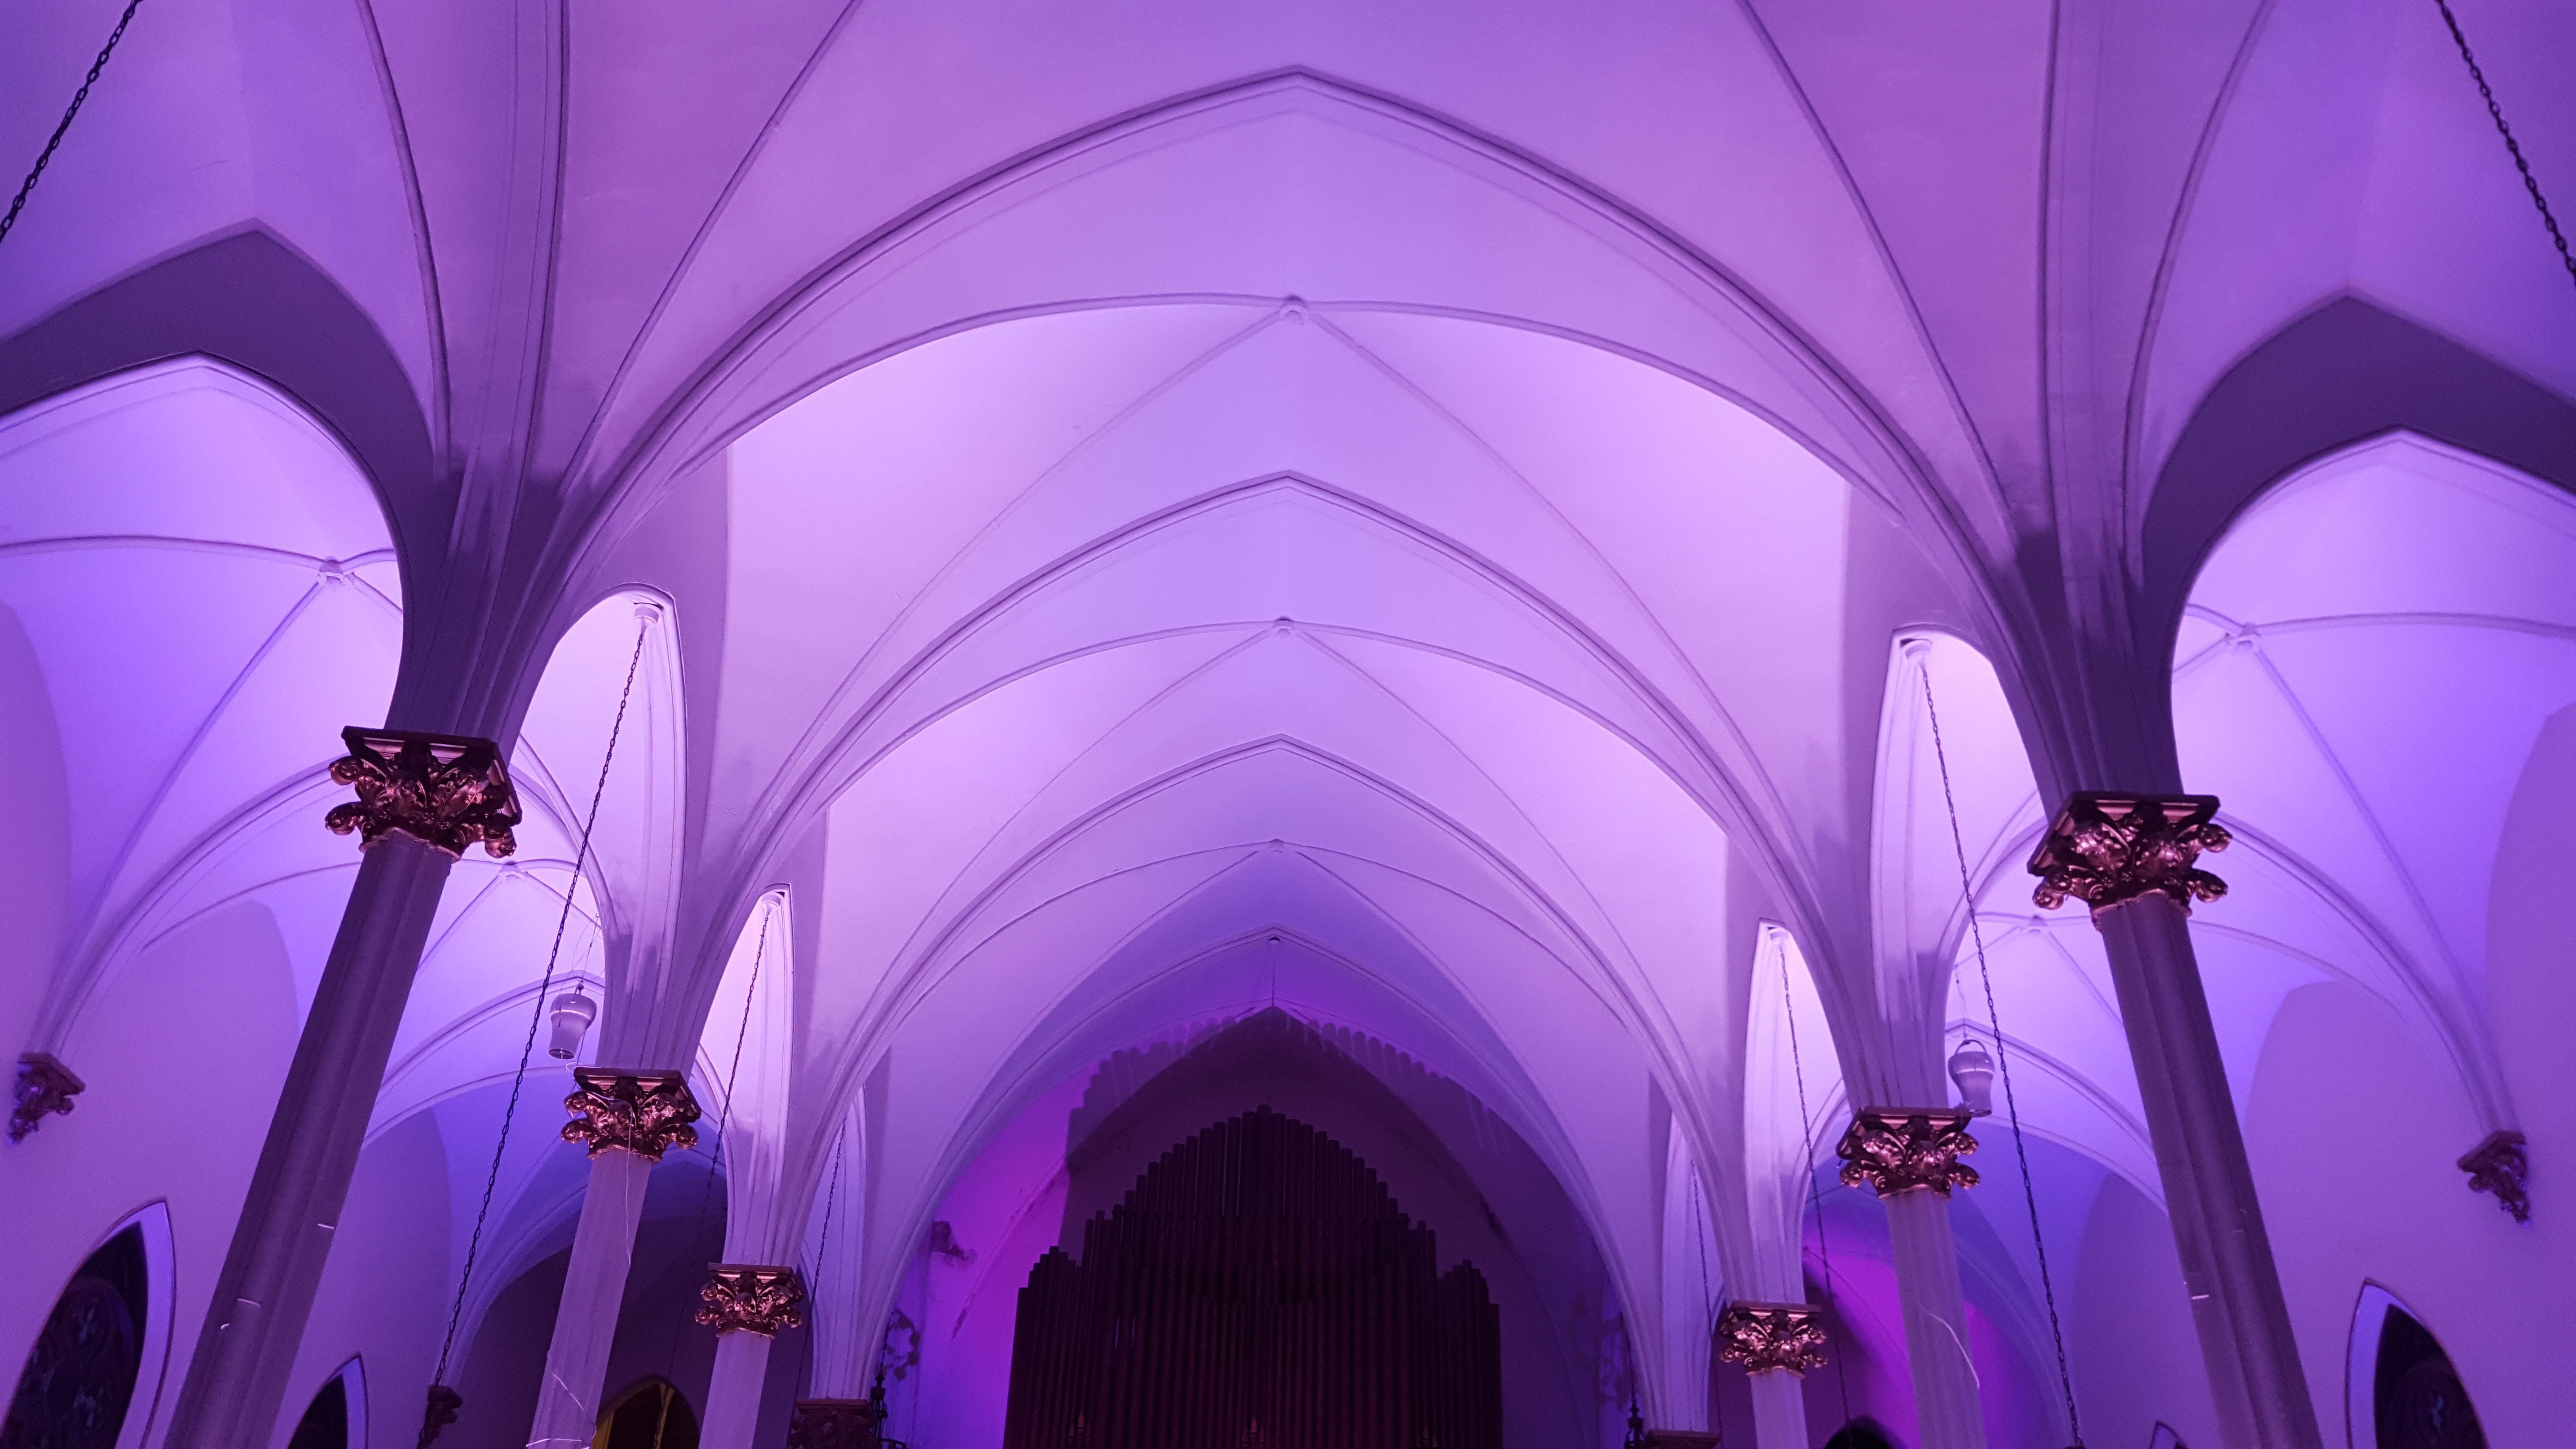 Sacred Heart Music Center. Up lighting in lavender.